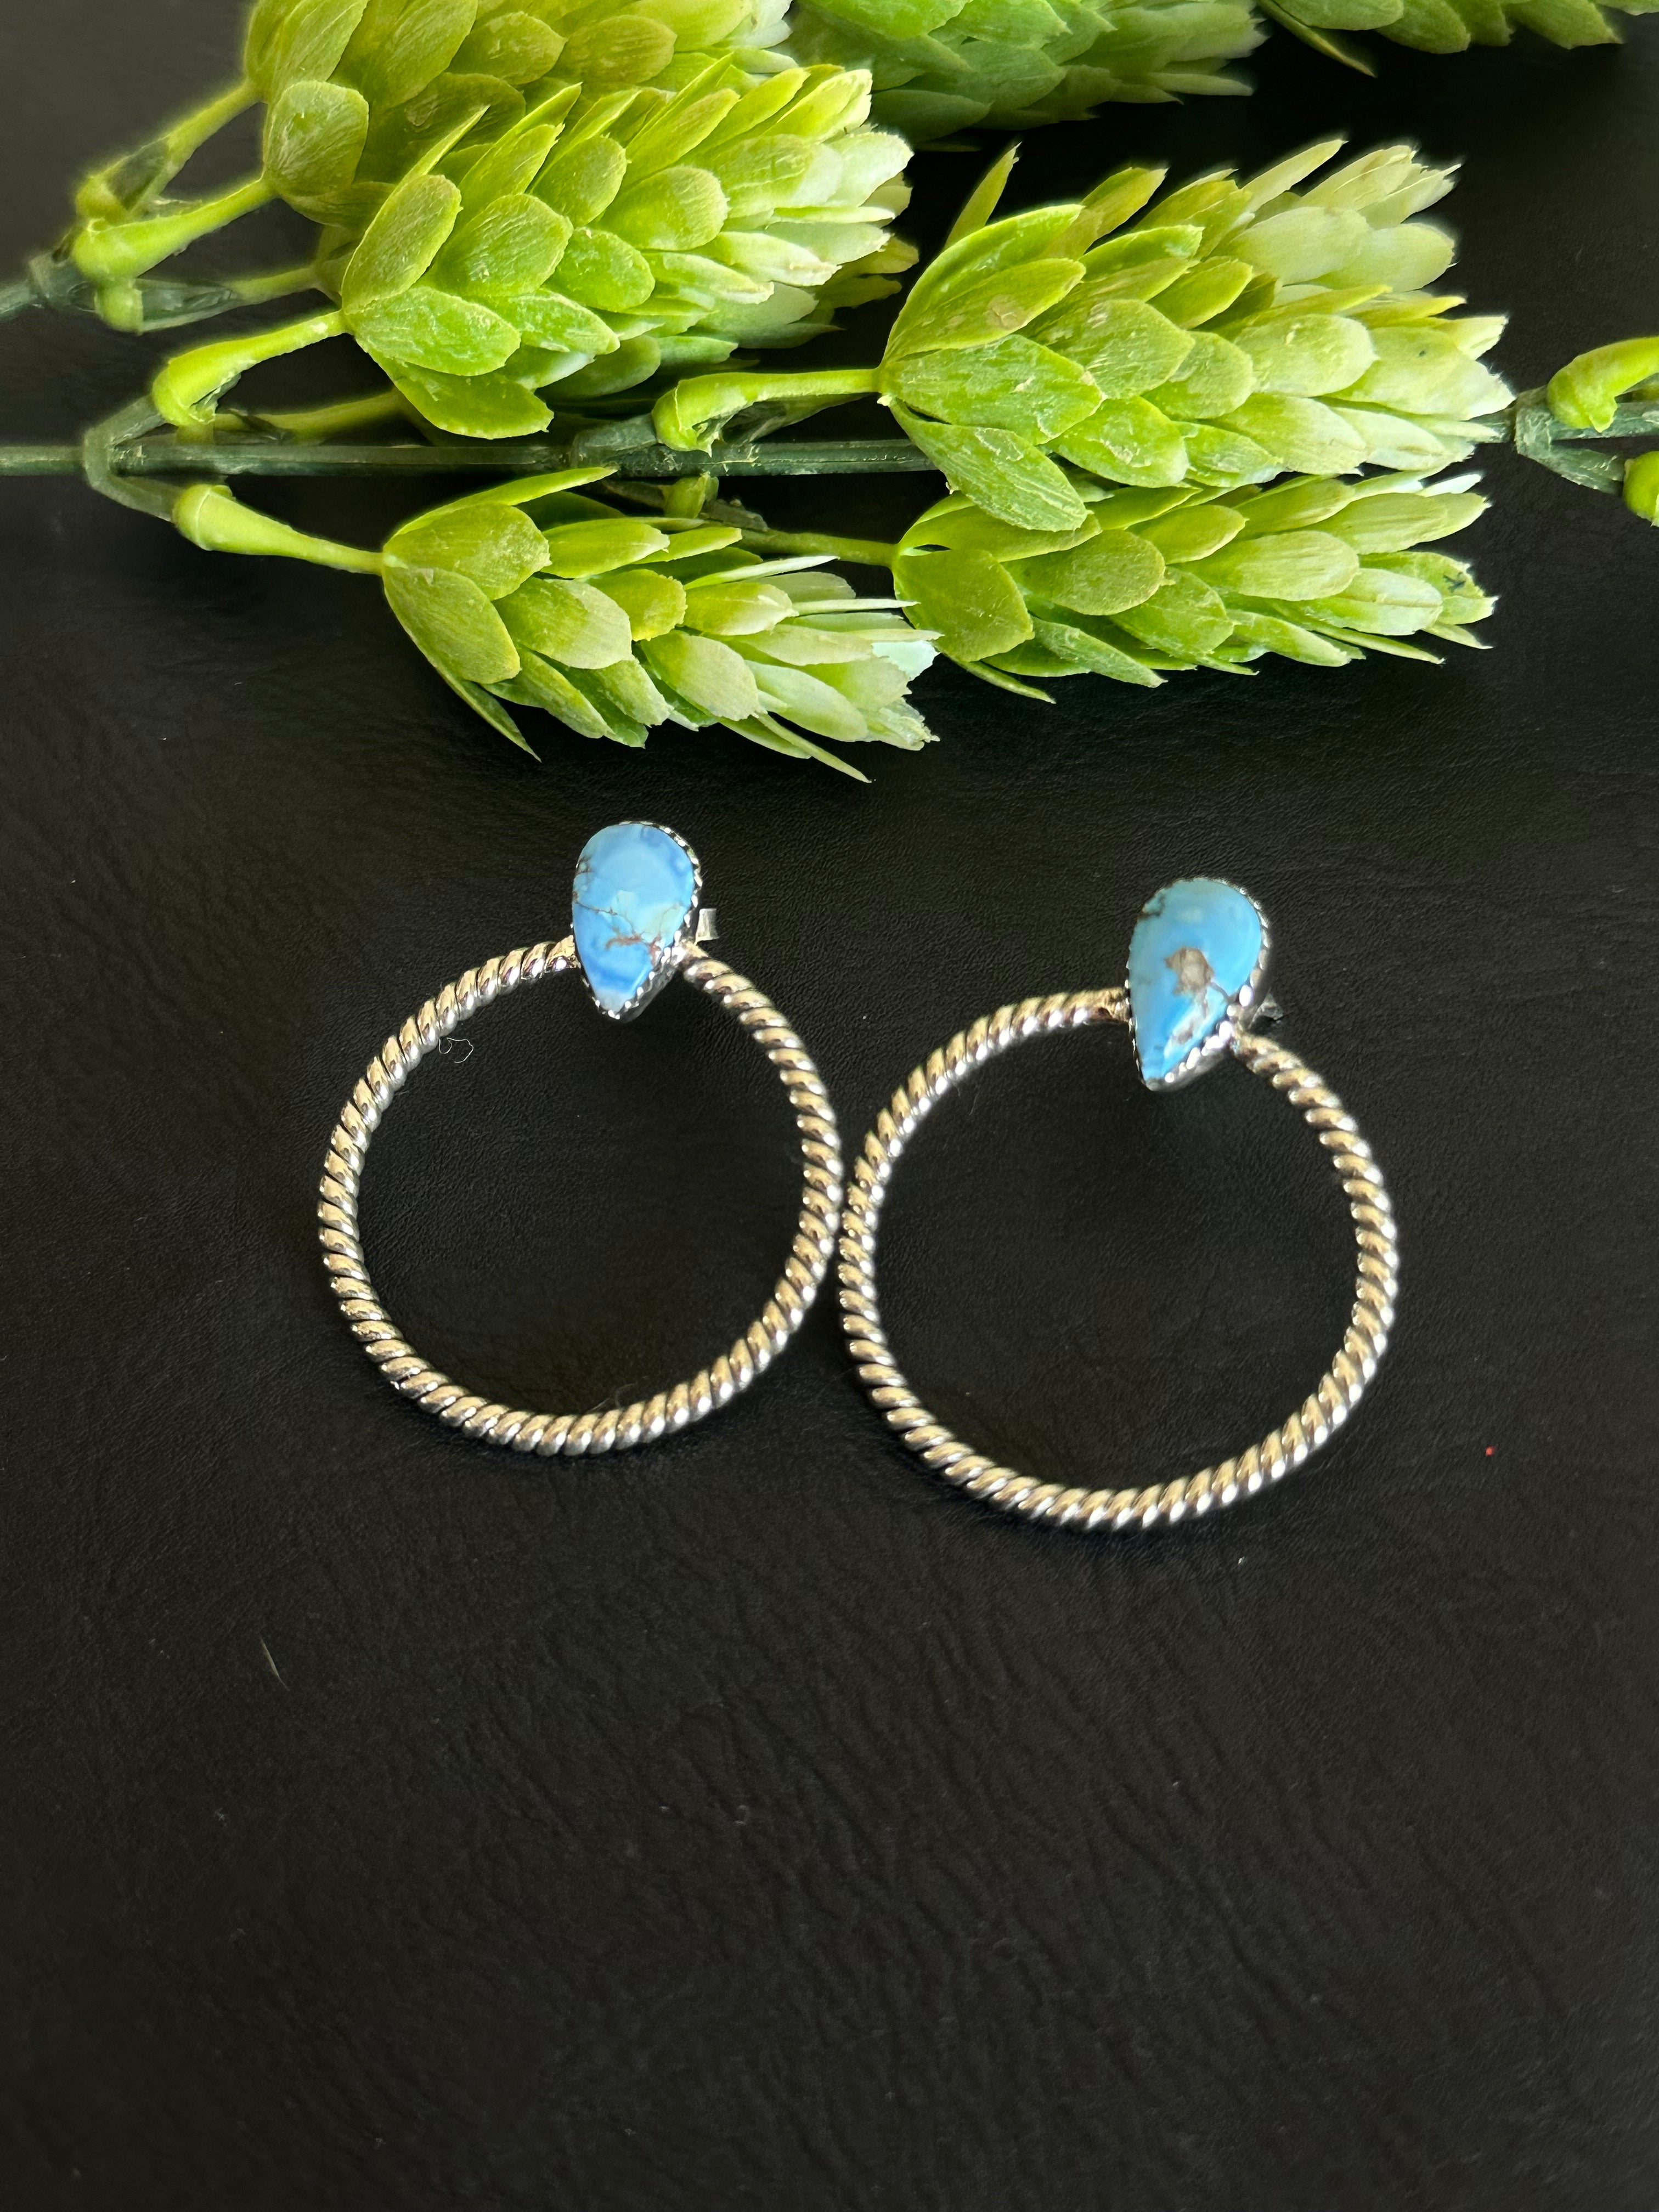 Southwest Handmade Golden Hills Turquoise & Sterling Silver Post Hoop Earrings